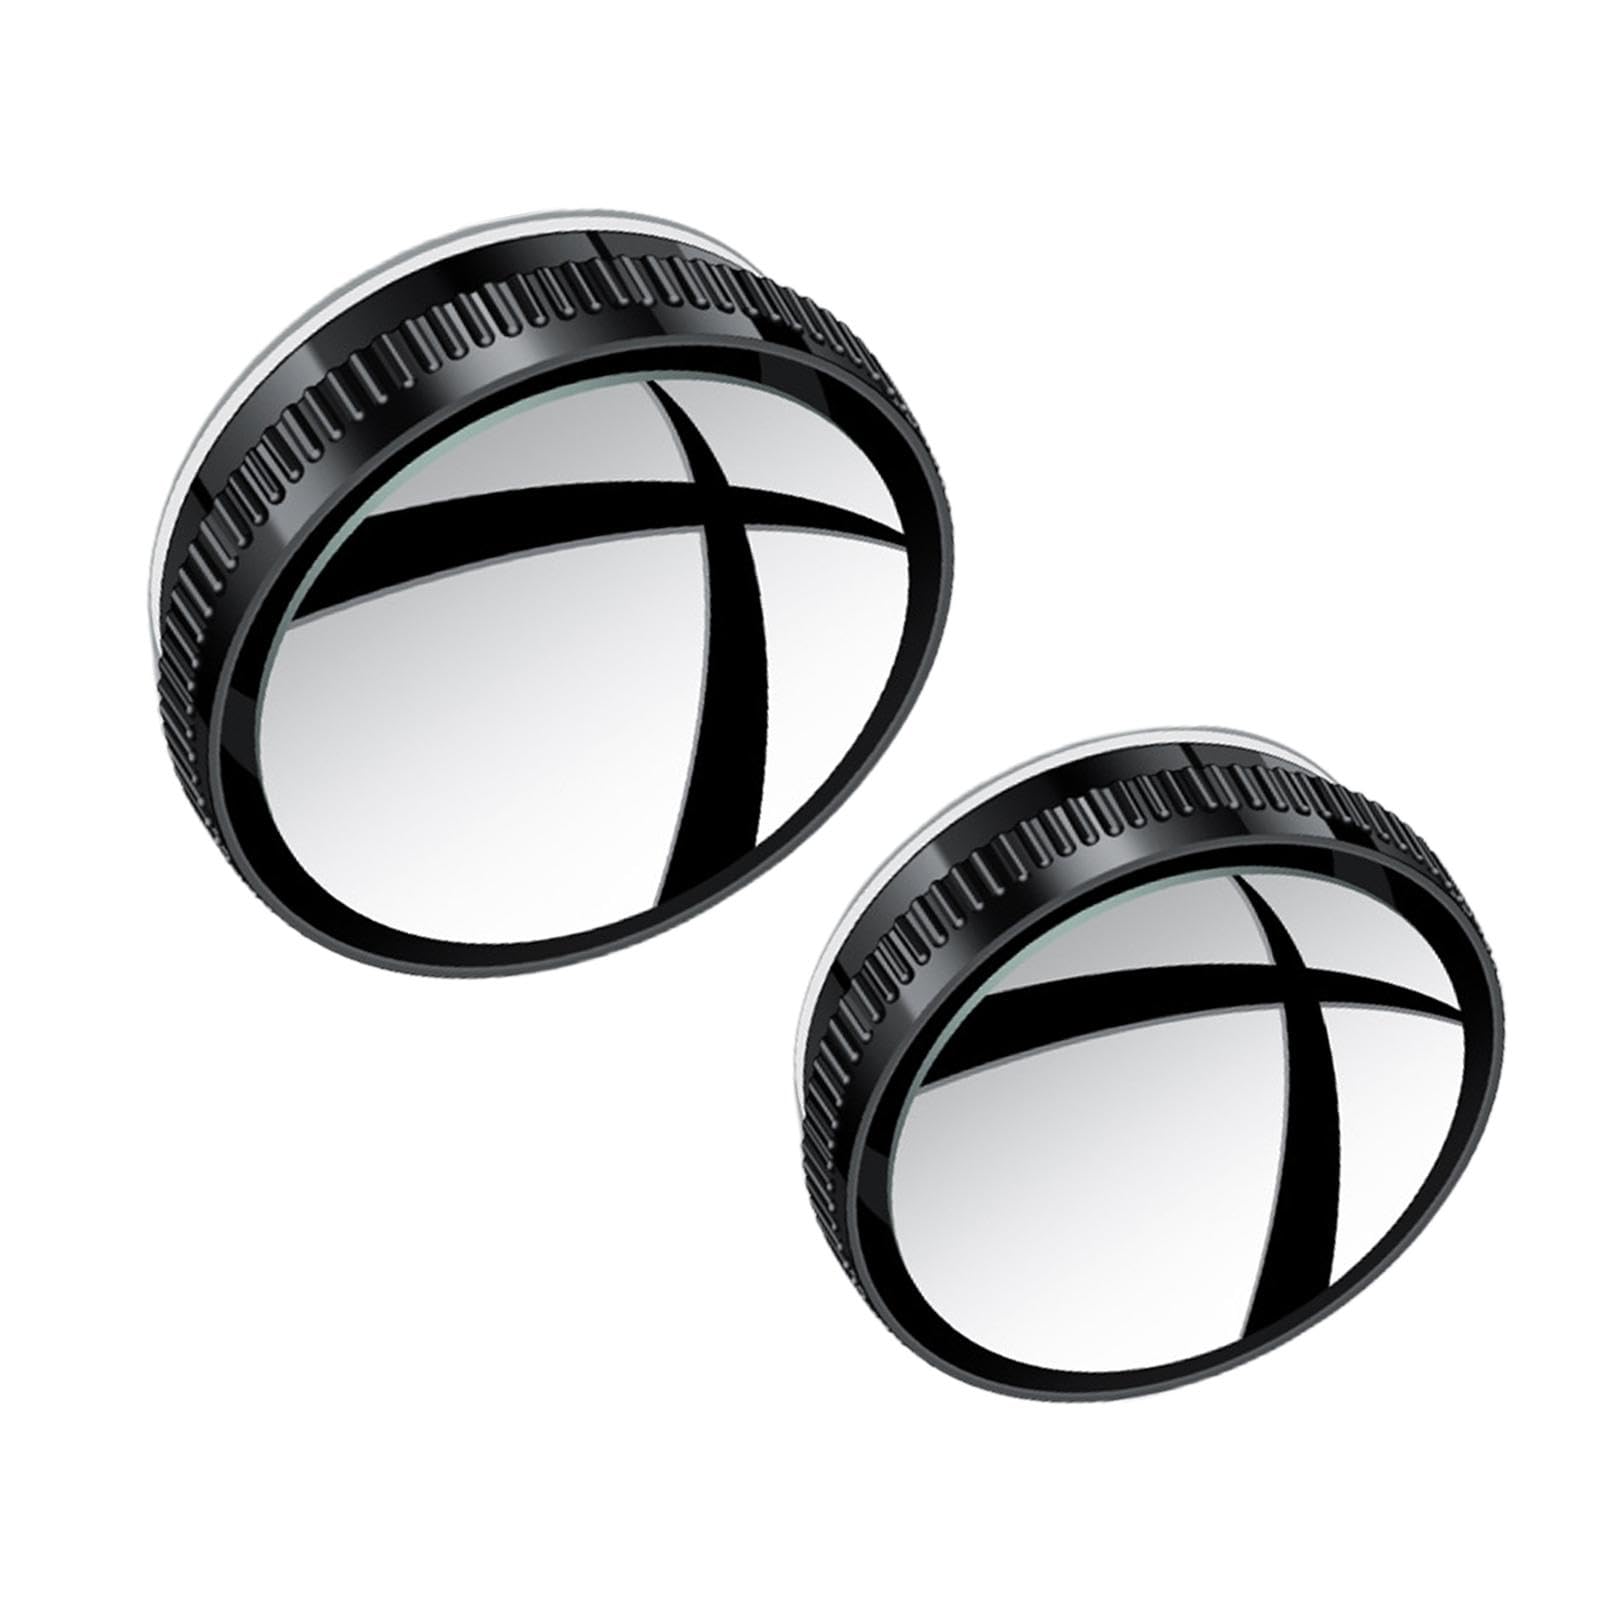 Yianyal Umkehr-Blindglas, Hilfs-Blindglas - 2 Stück Zusatz-Blindglas, verstellbar für Rückwärtsfahrt,360-Grad-Weitwinkel-Kollisionsschutz-Autoseitenglas für LKWs, Wohnwagen von Yianyal